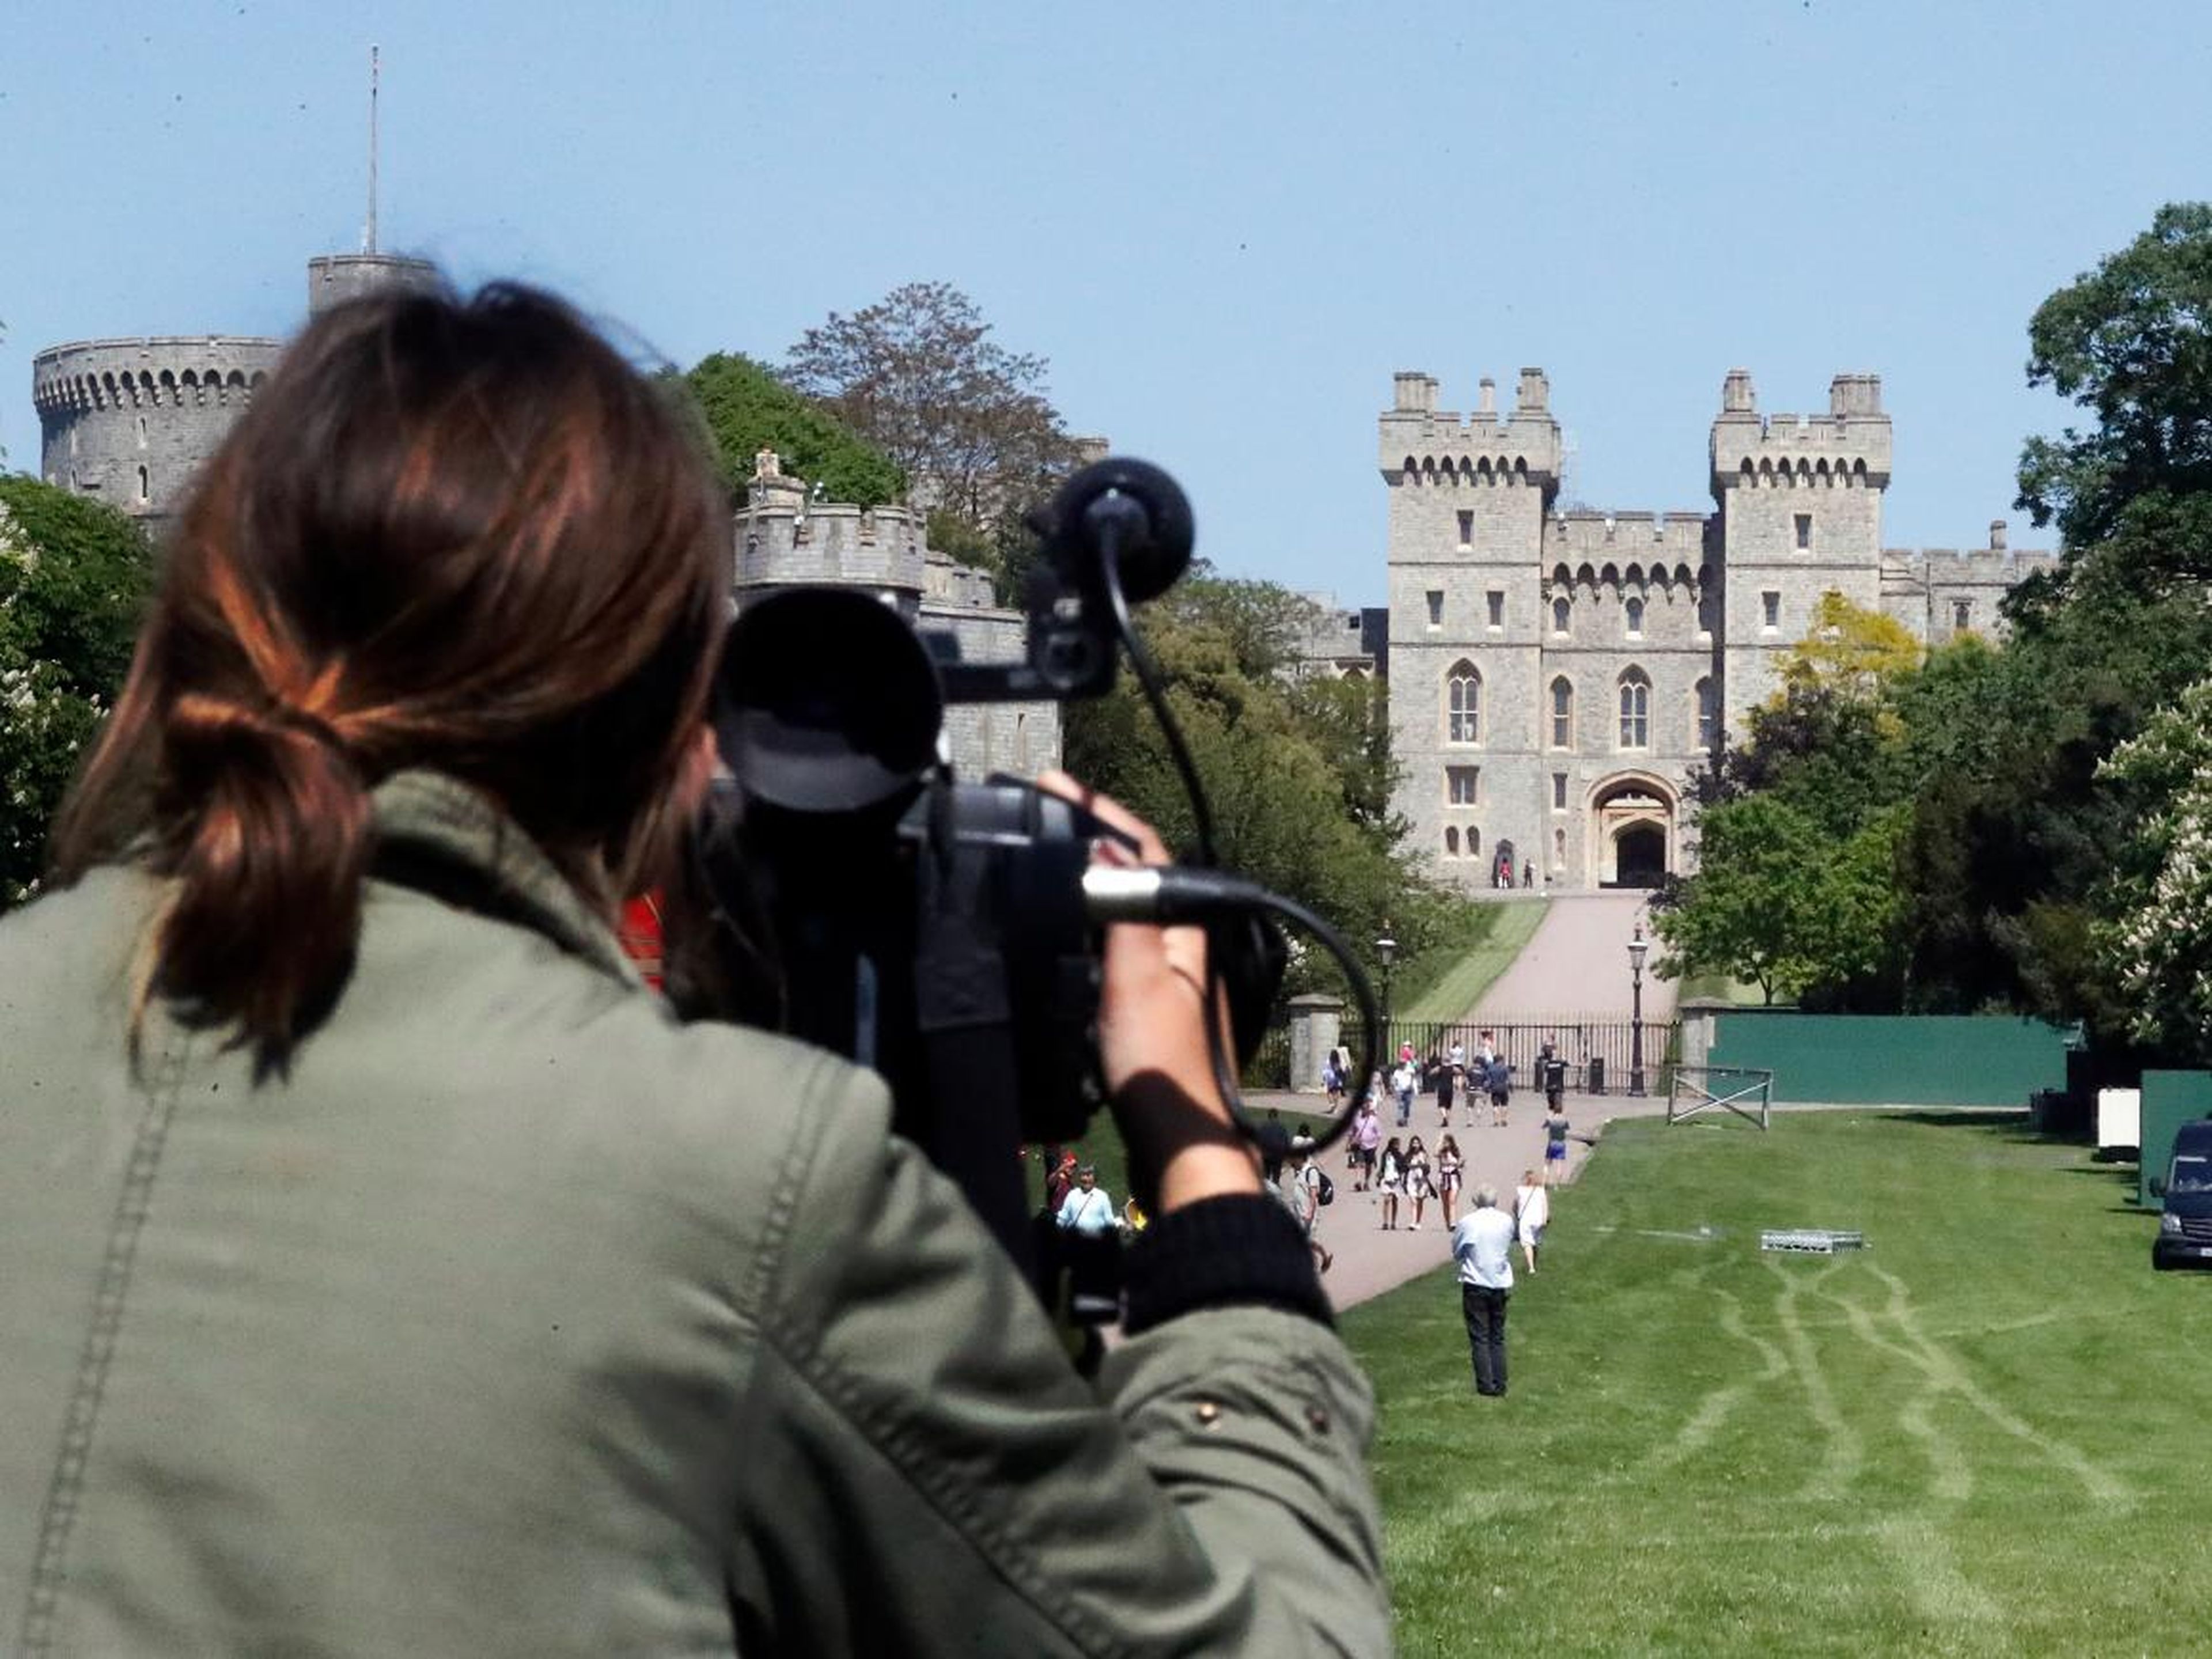 Un operador de cámara filma la Caminata hacia el Castillo de Windsor, Inglaterra, antes de la boda del Príncipe Harry y Meghan Markle.